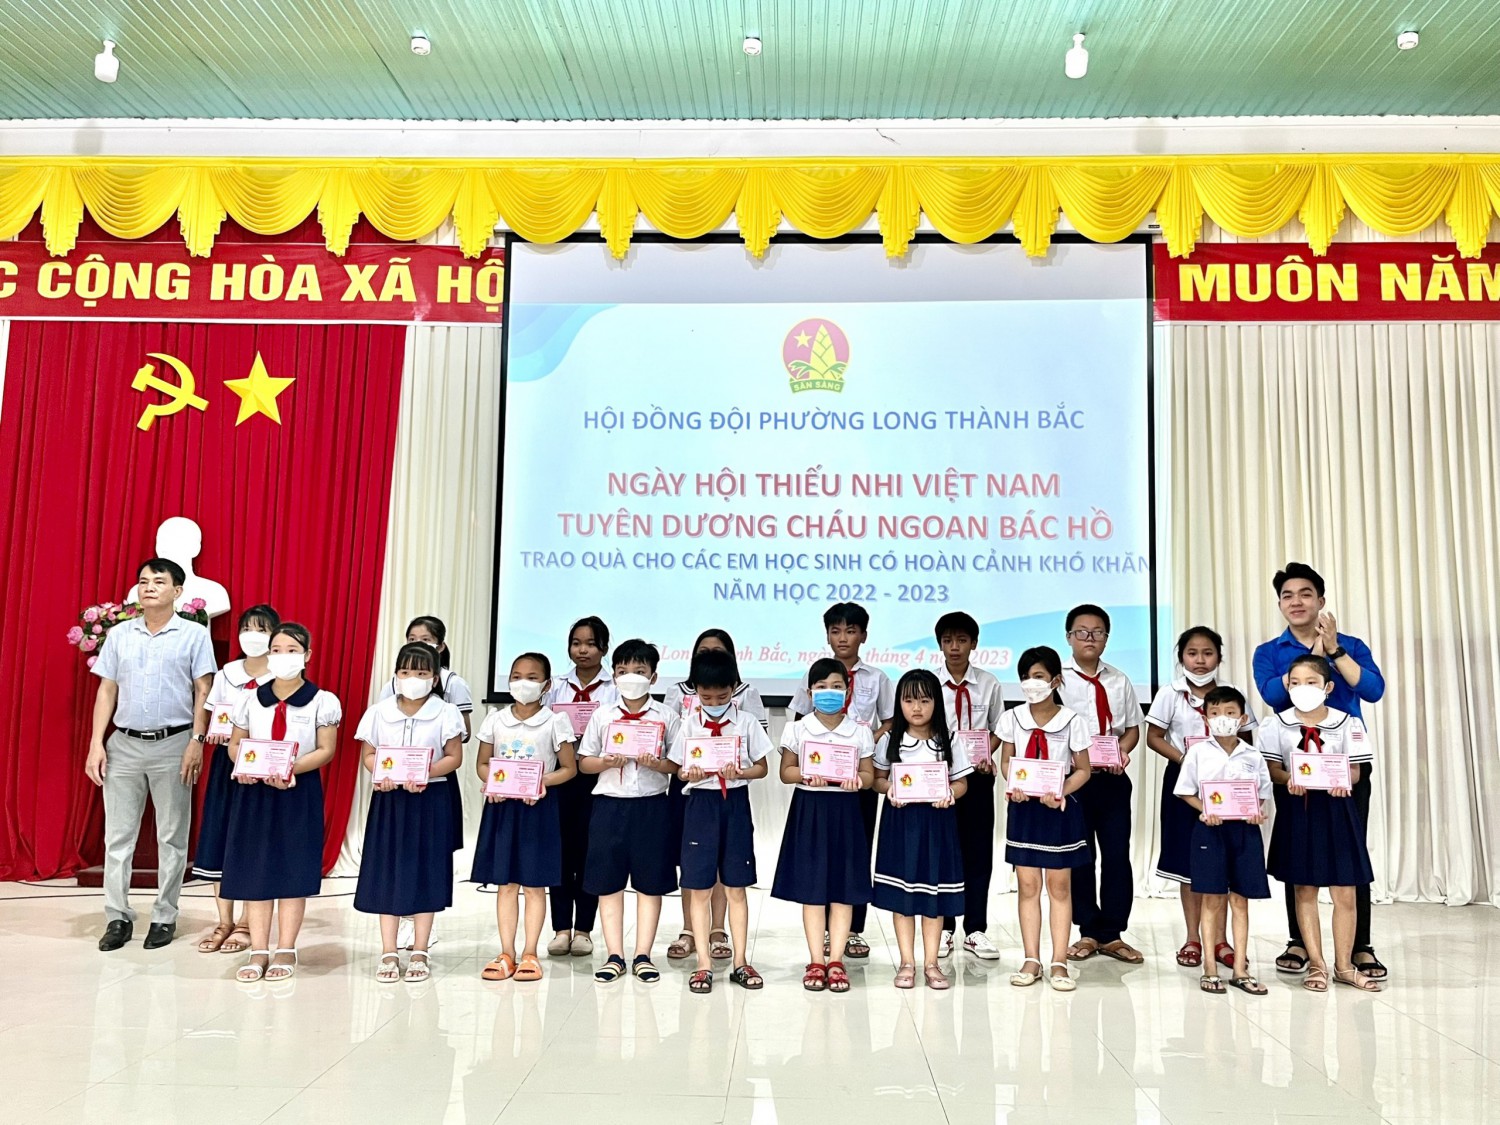 Hội đồng đội phường Long Thành Bắc tổ chức “Ngày hội Thiếu nhi Việt Nam” tuyên dương cháu ngoan Bác Hồ.